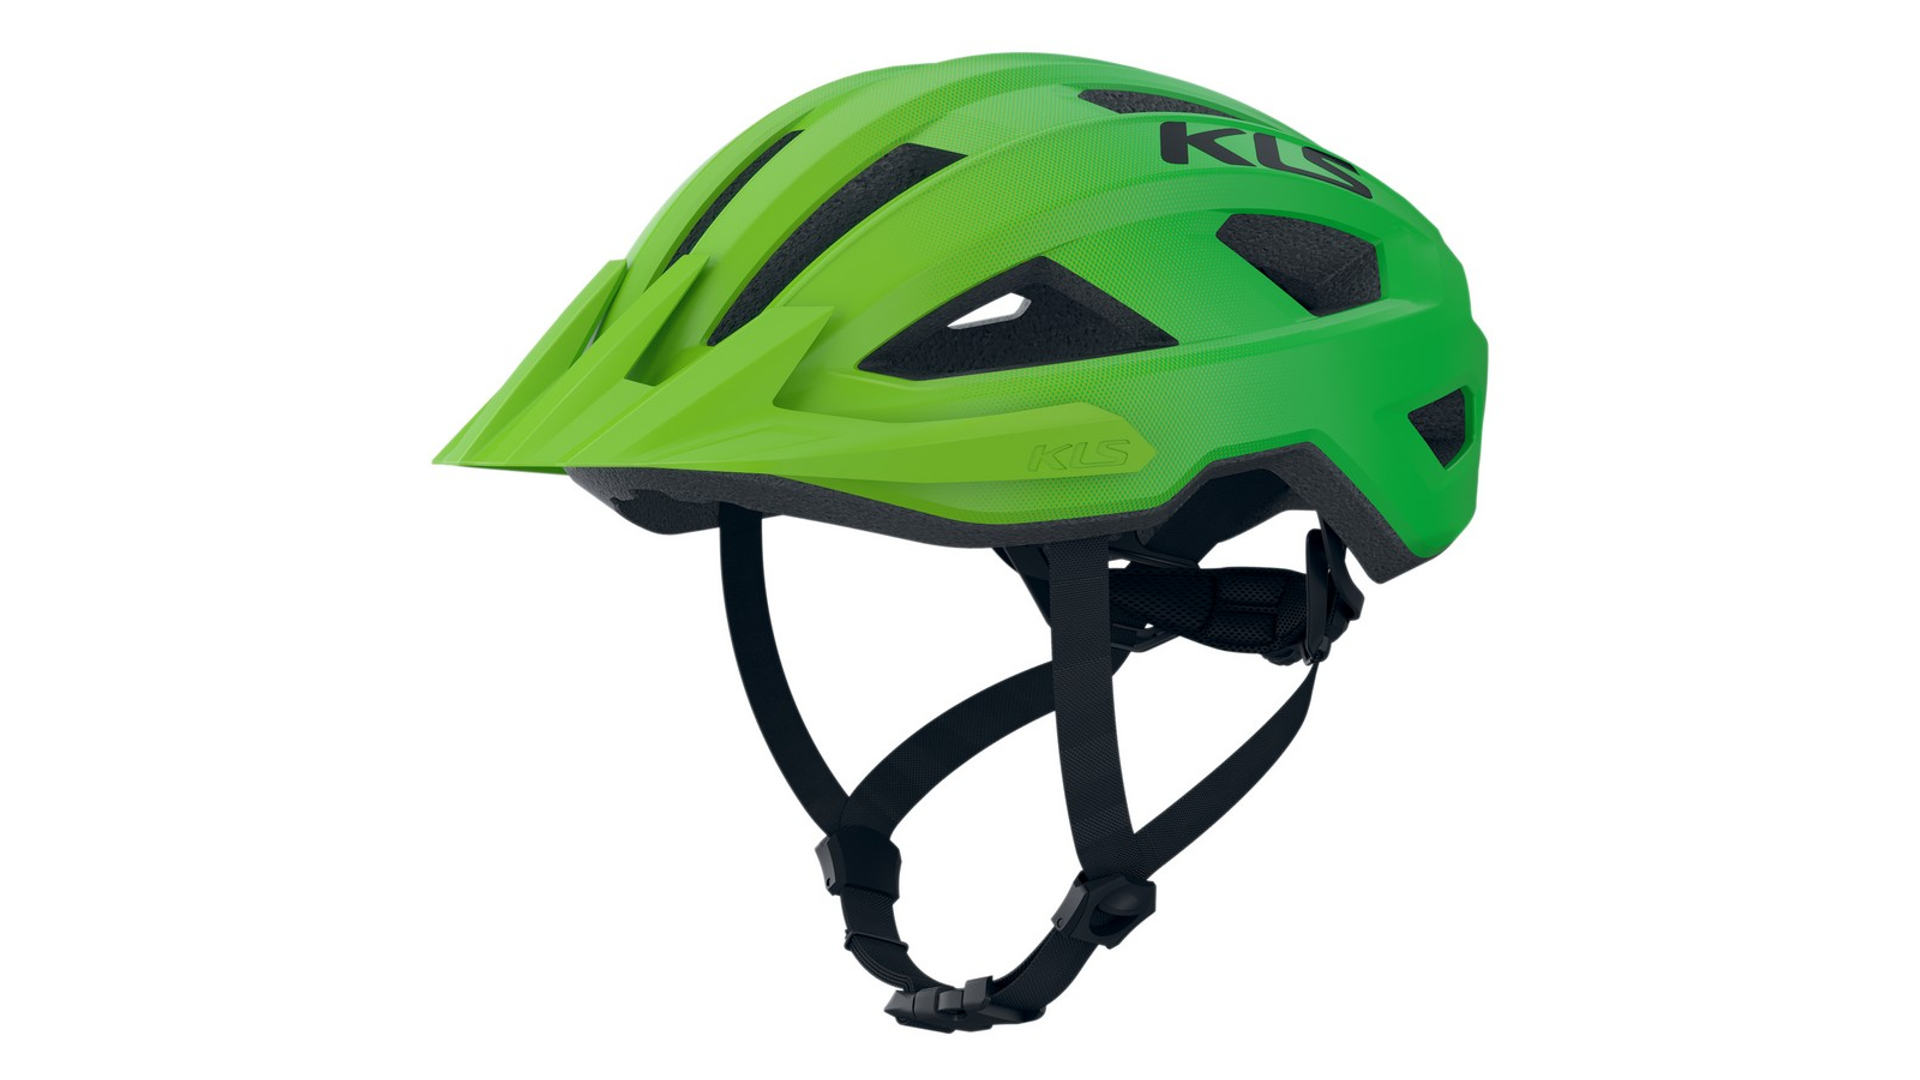 KELLYS Daze 022 MTB XC kerékpáros sisak, green, S/M (52-55 cm)